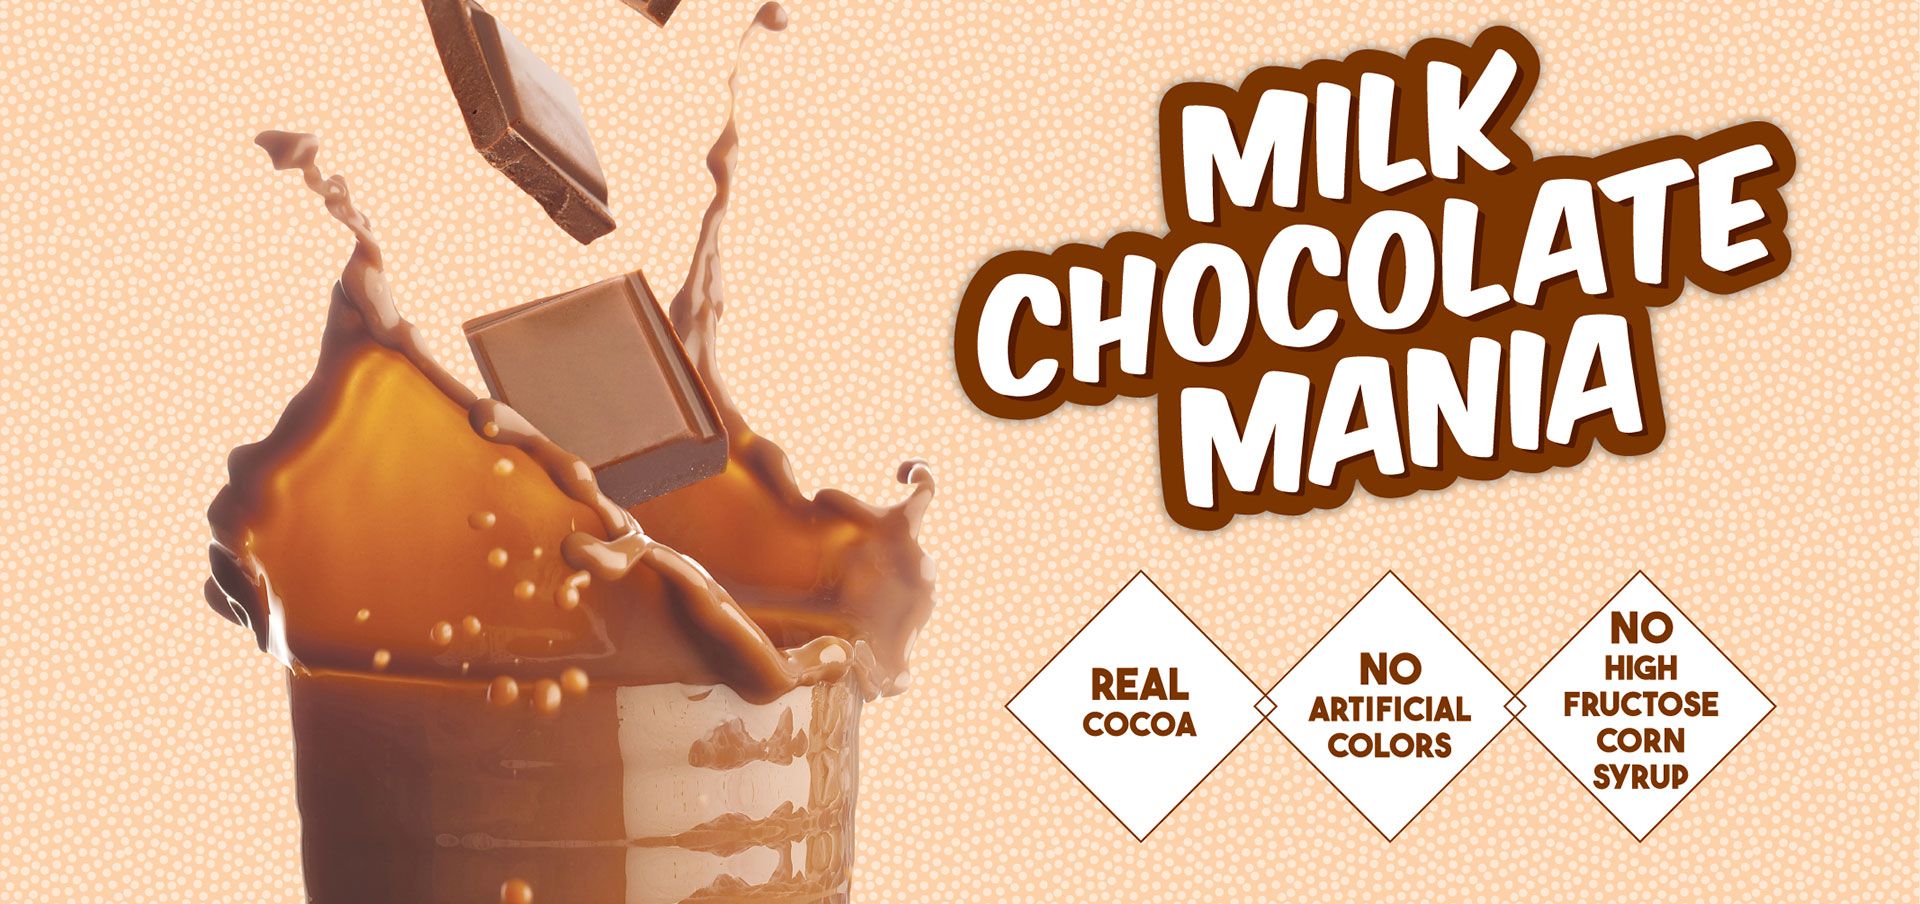 milk chocolate mania label image